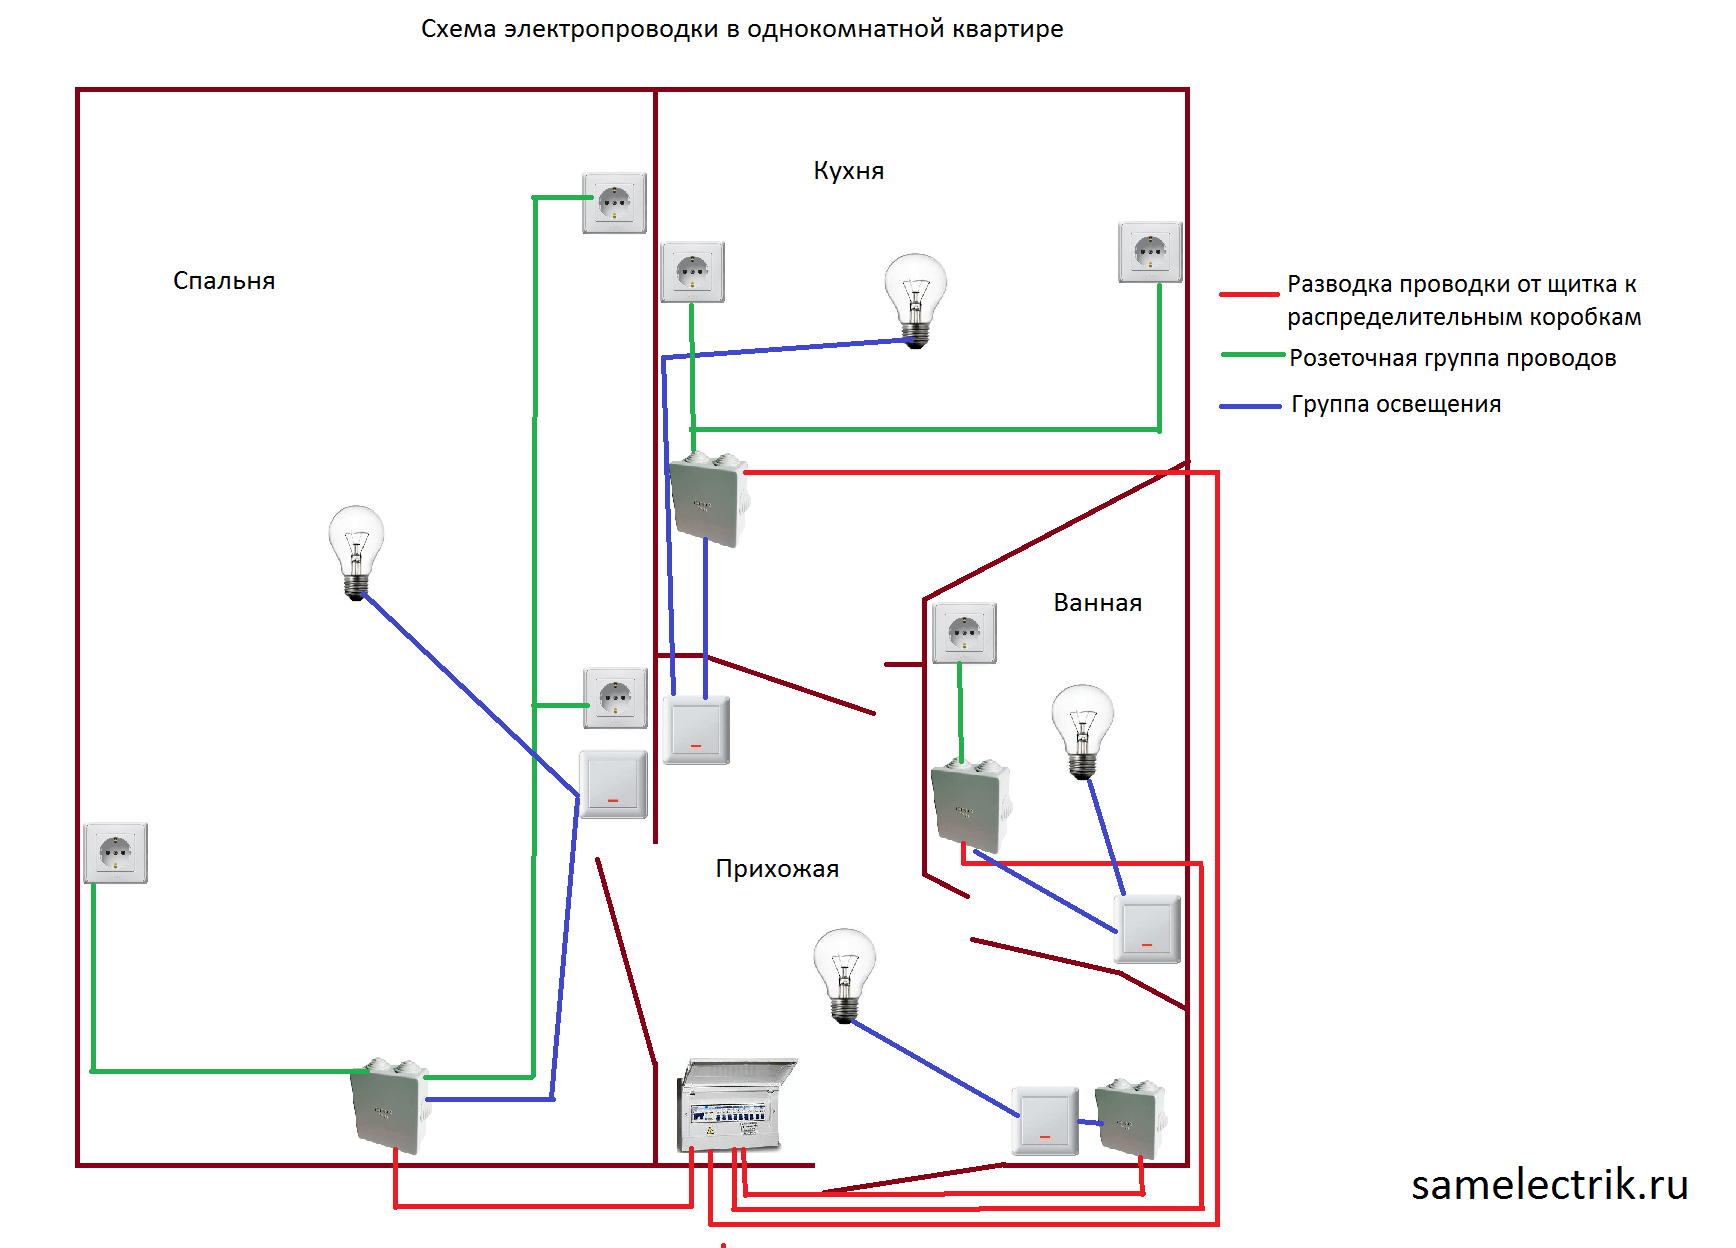 Замена электропроводки в хрущевке — схема, расчет и варианты самостоятельного проведения работ